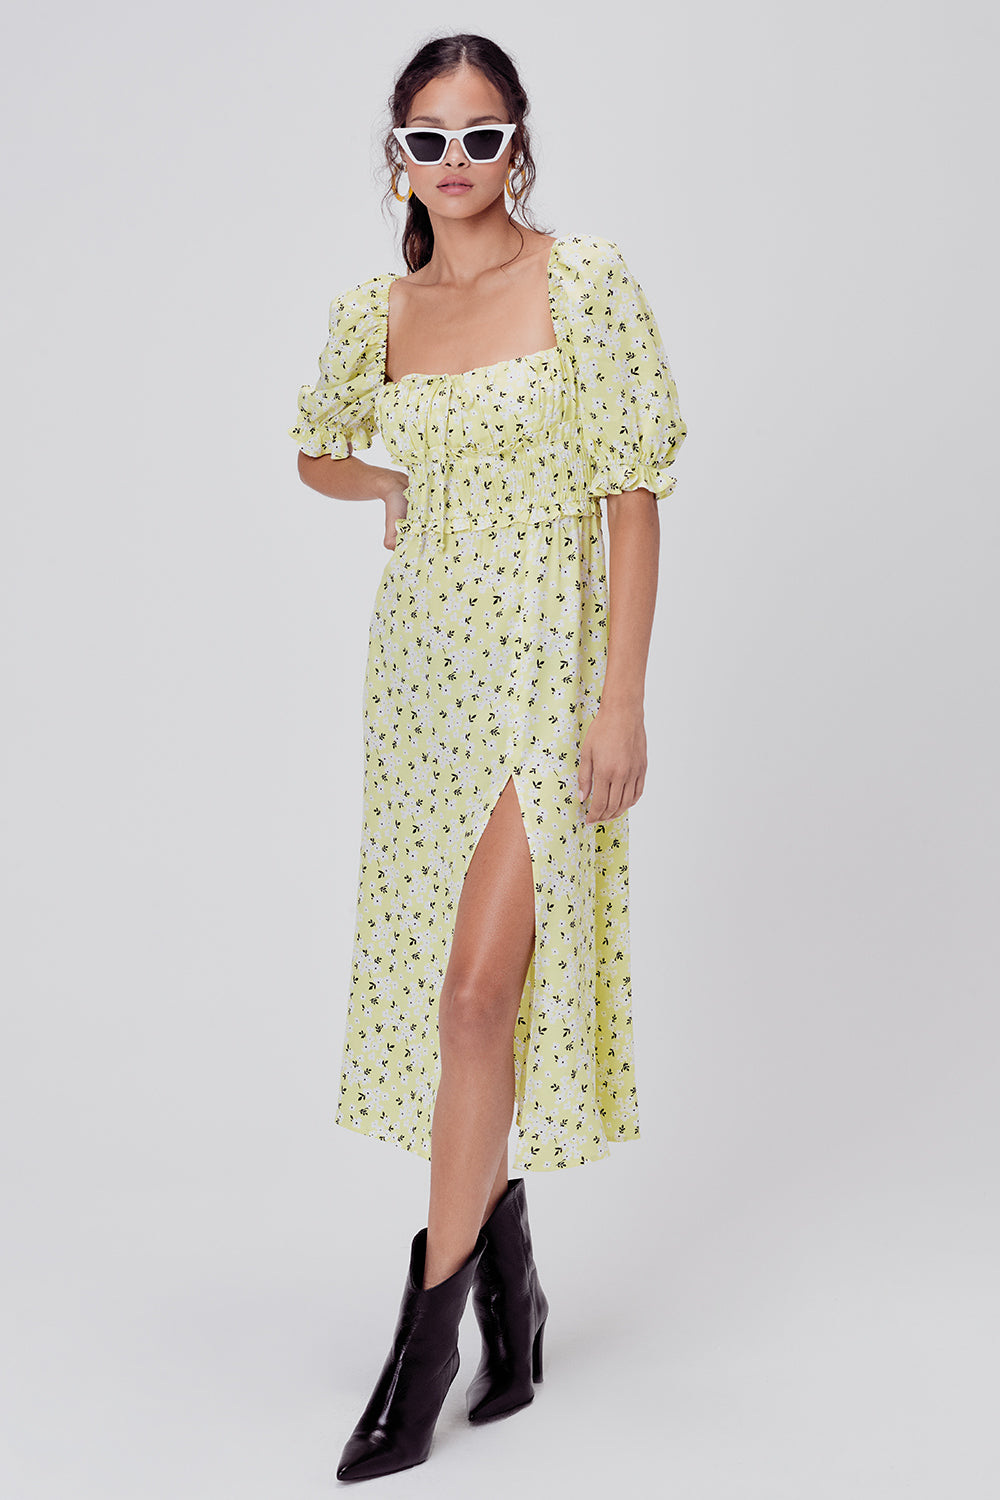 for love and lemons polka dot dress